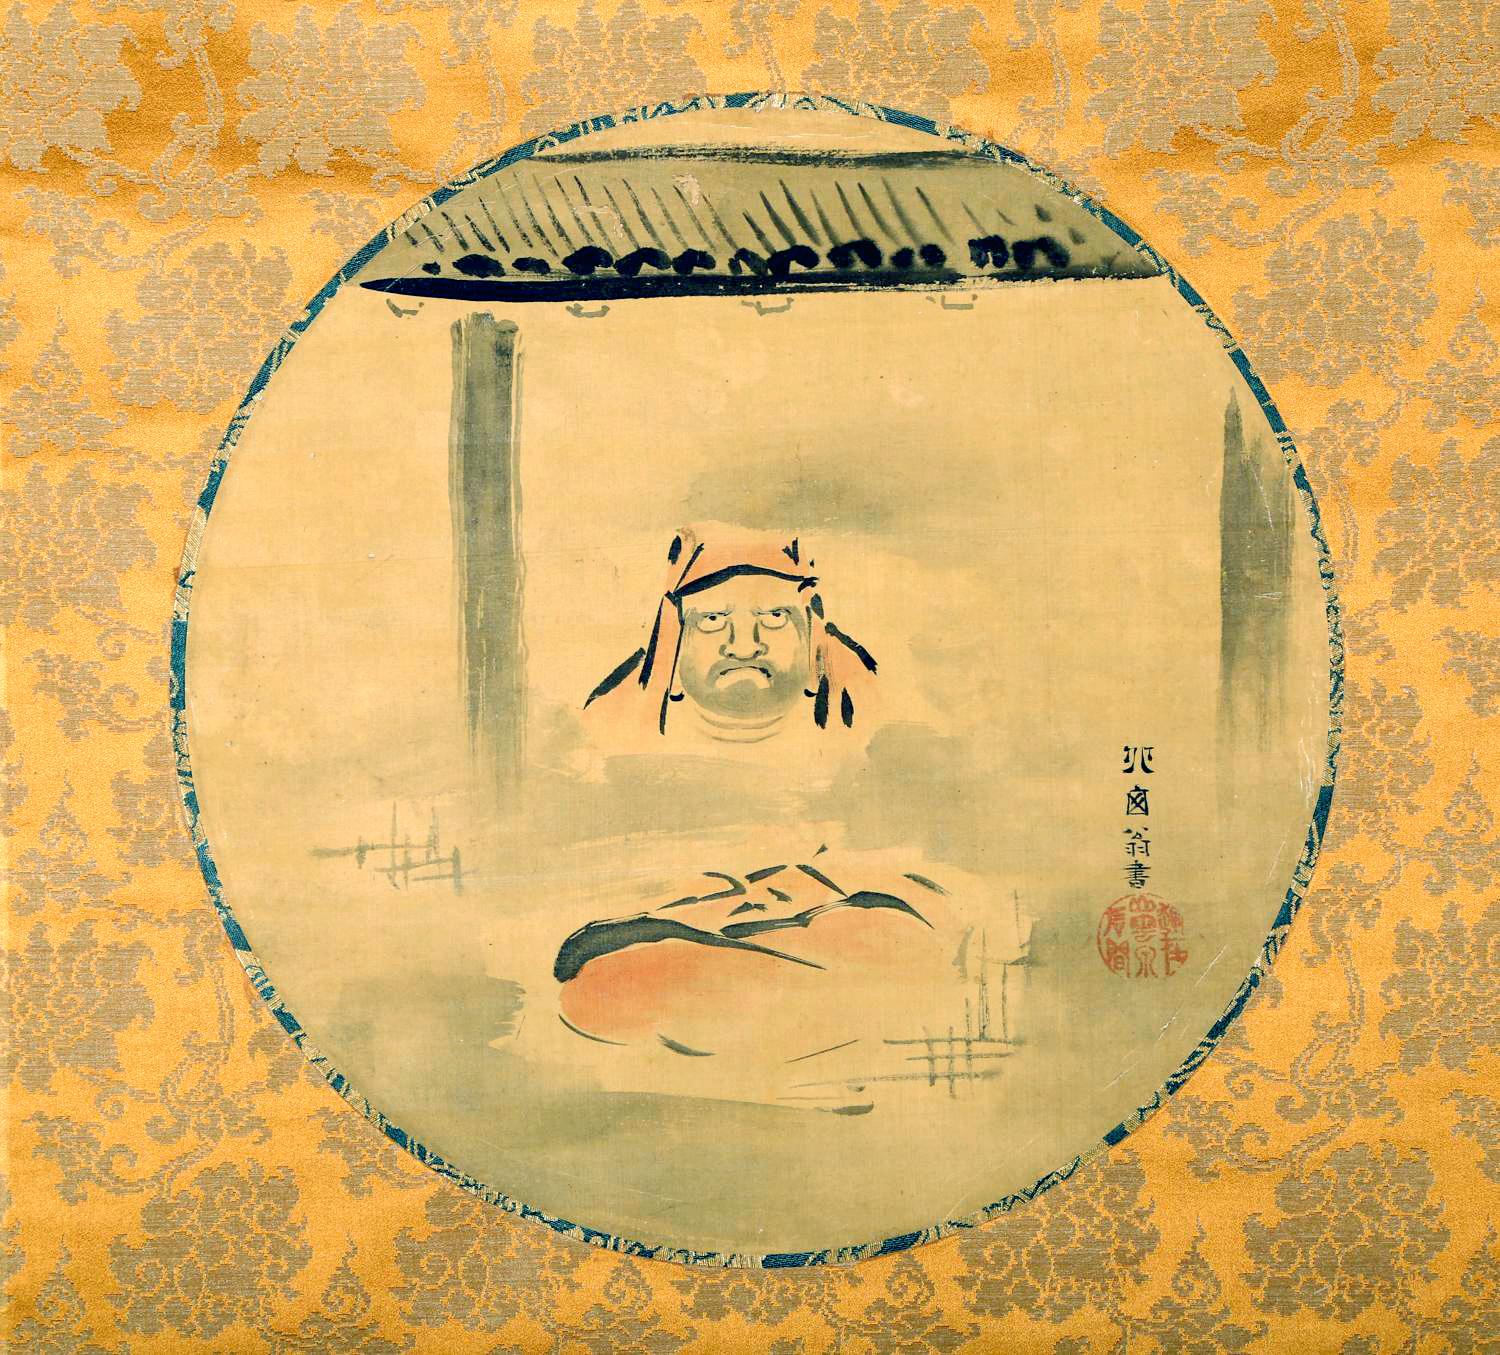 Eine japanische hängende Schriftrolle, die dem Maler Hanabusa Itchō (1652-1724) aus der Edo-Zeit zugeschrieben wird. Das Kunstwerk zeigt ein Seidenrondell, das schön in einen goldenen Brokathintergrund montiert ist. Das Gemälde zeigt einen